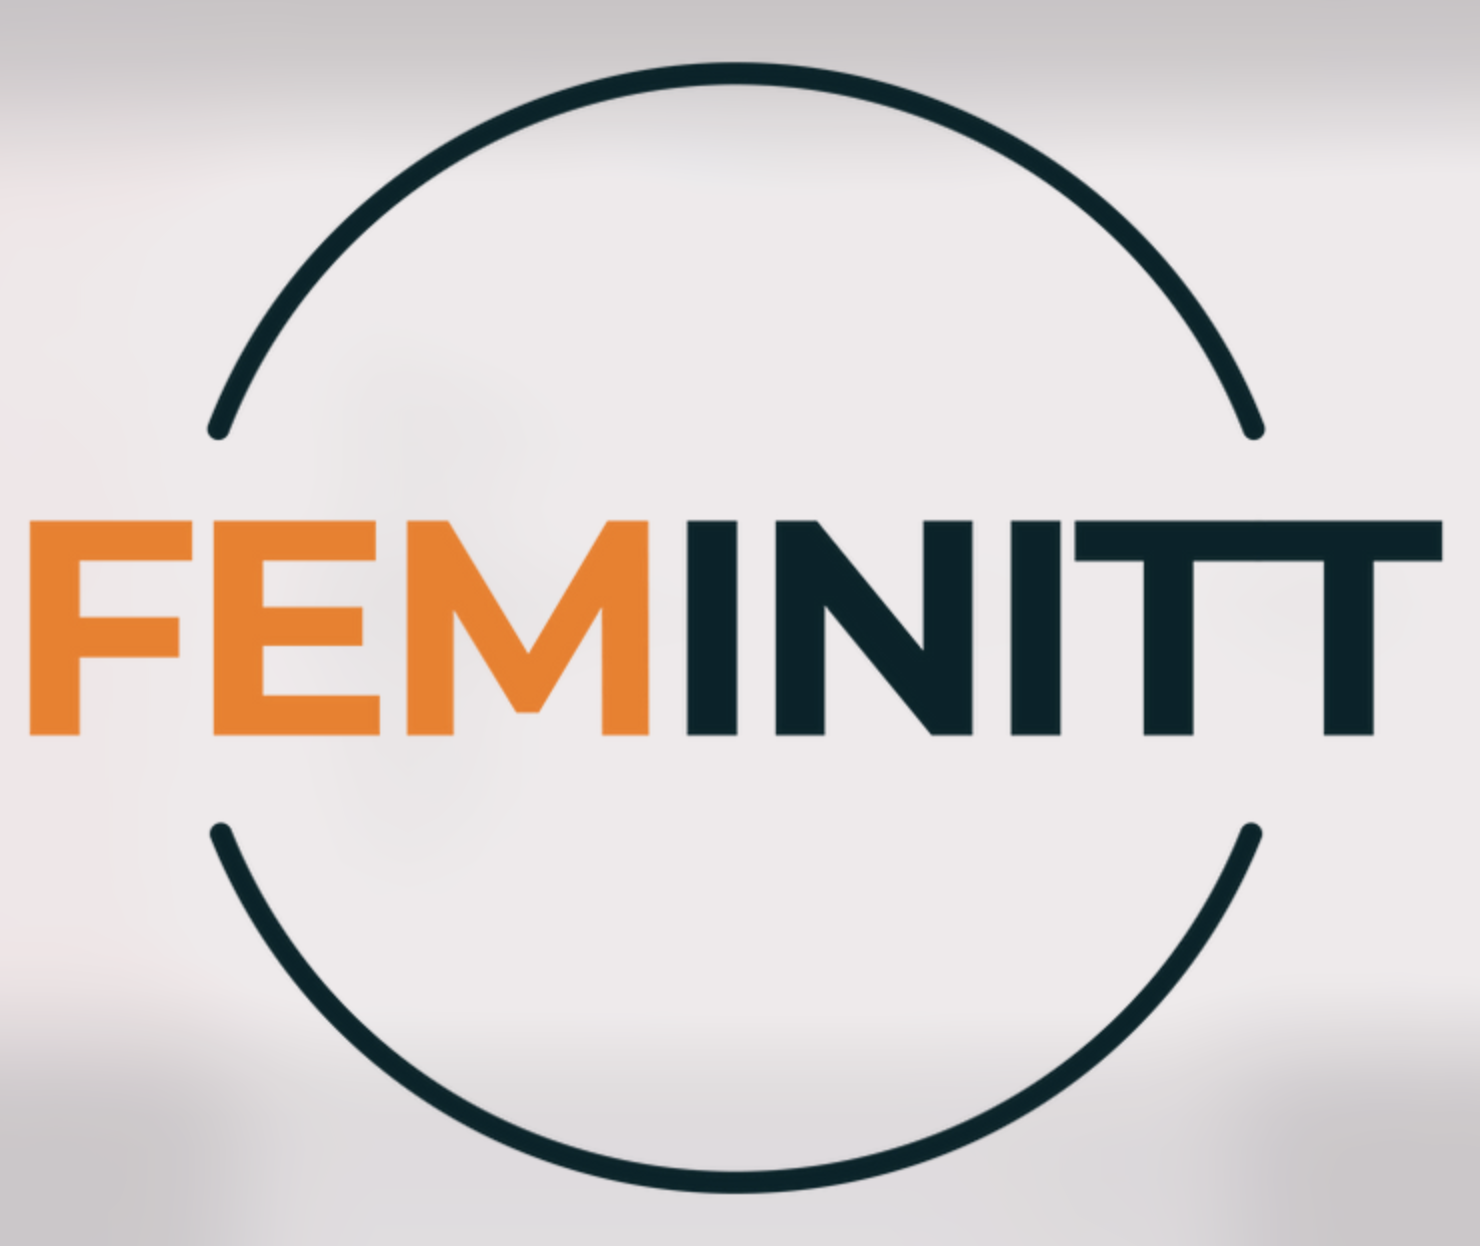 Femnitt logo